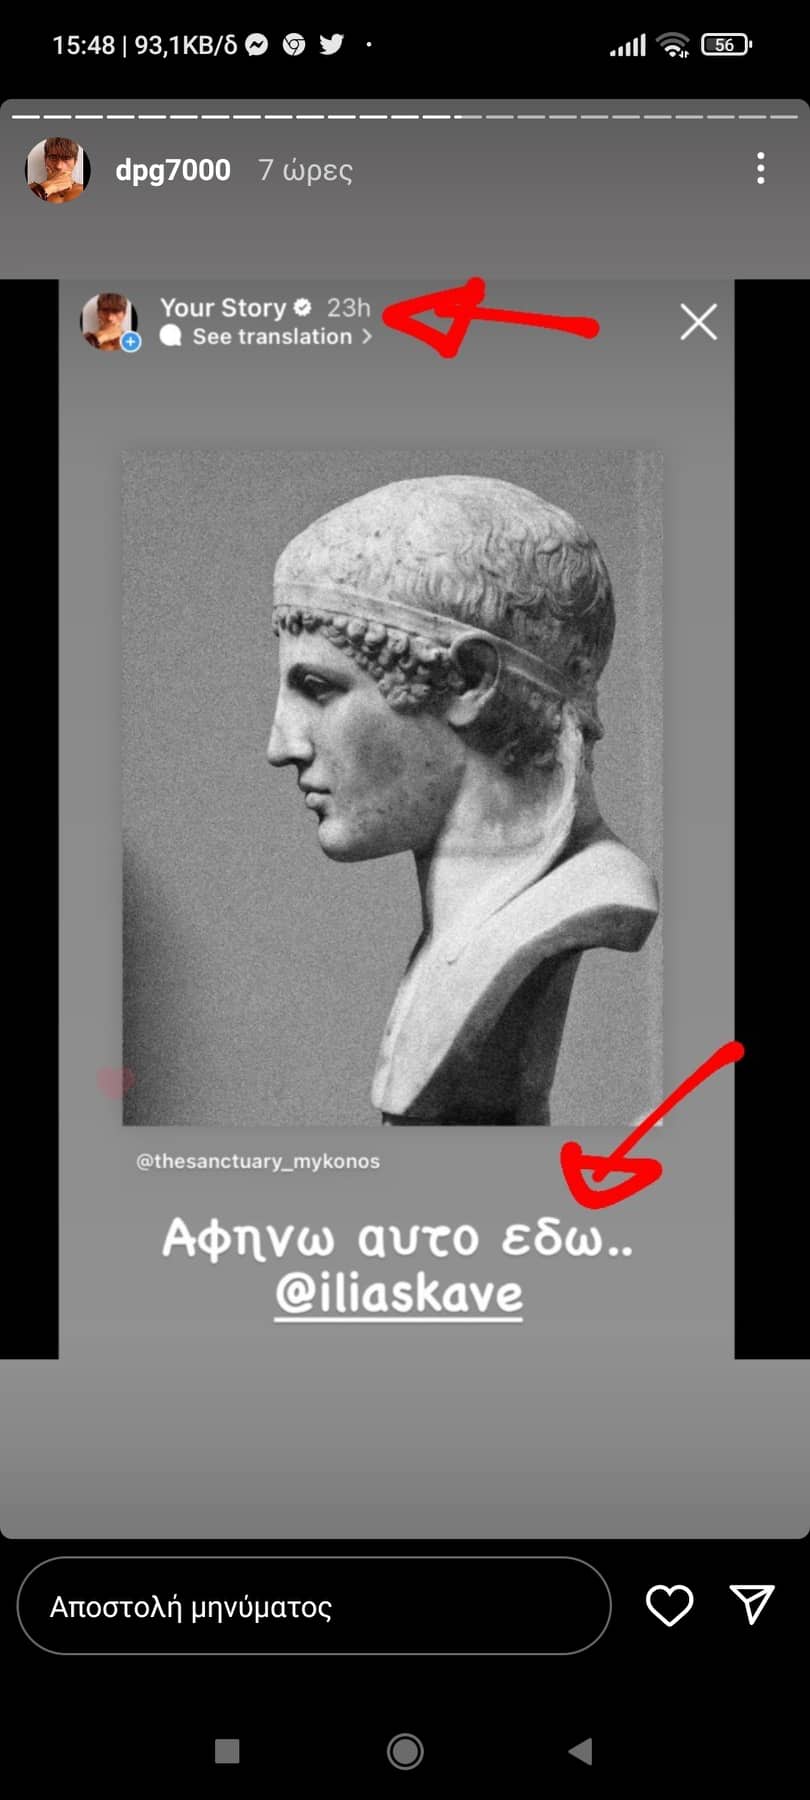 Το ευχαριστιέται με Ολυμπιακό ο Γιαννακόπουλος: «Αγάλματα, να γινόμασταν αγάλματα!» (pics)